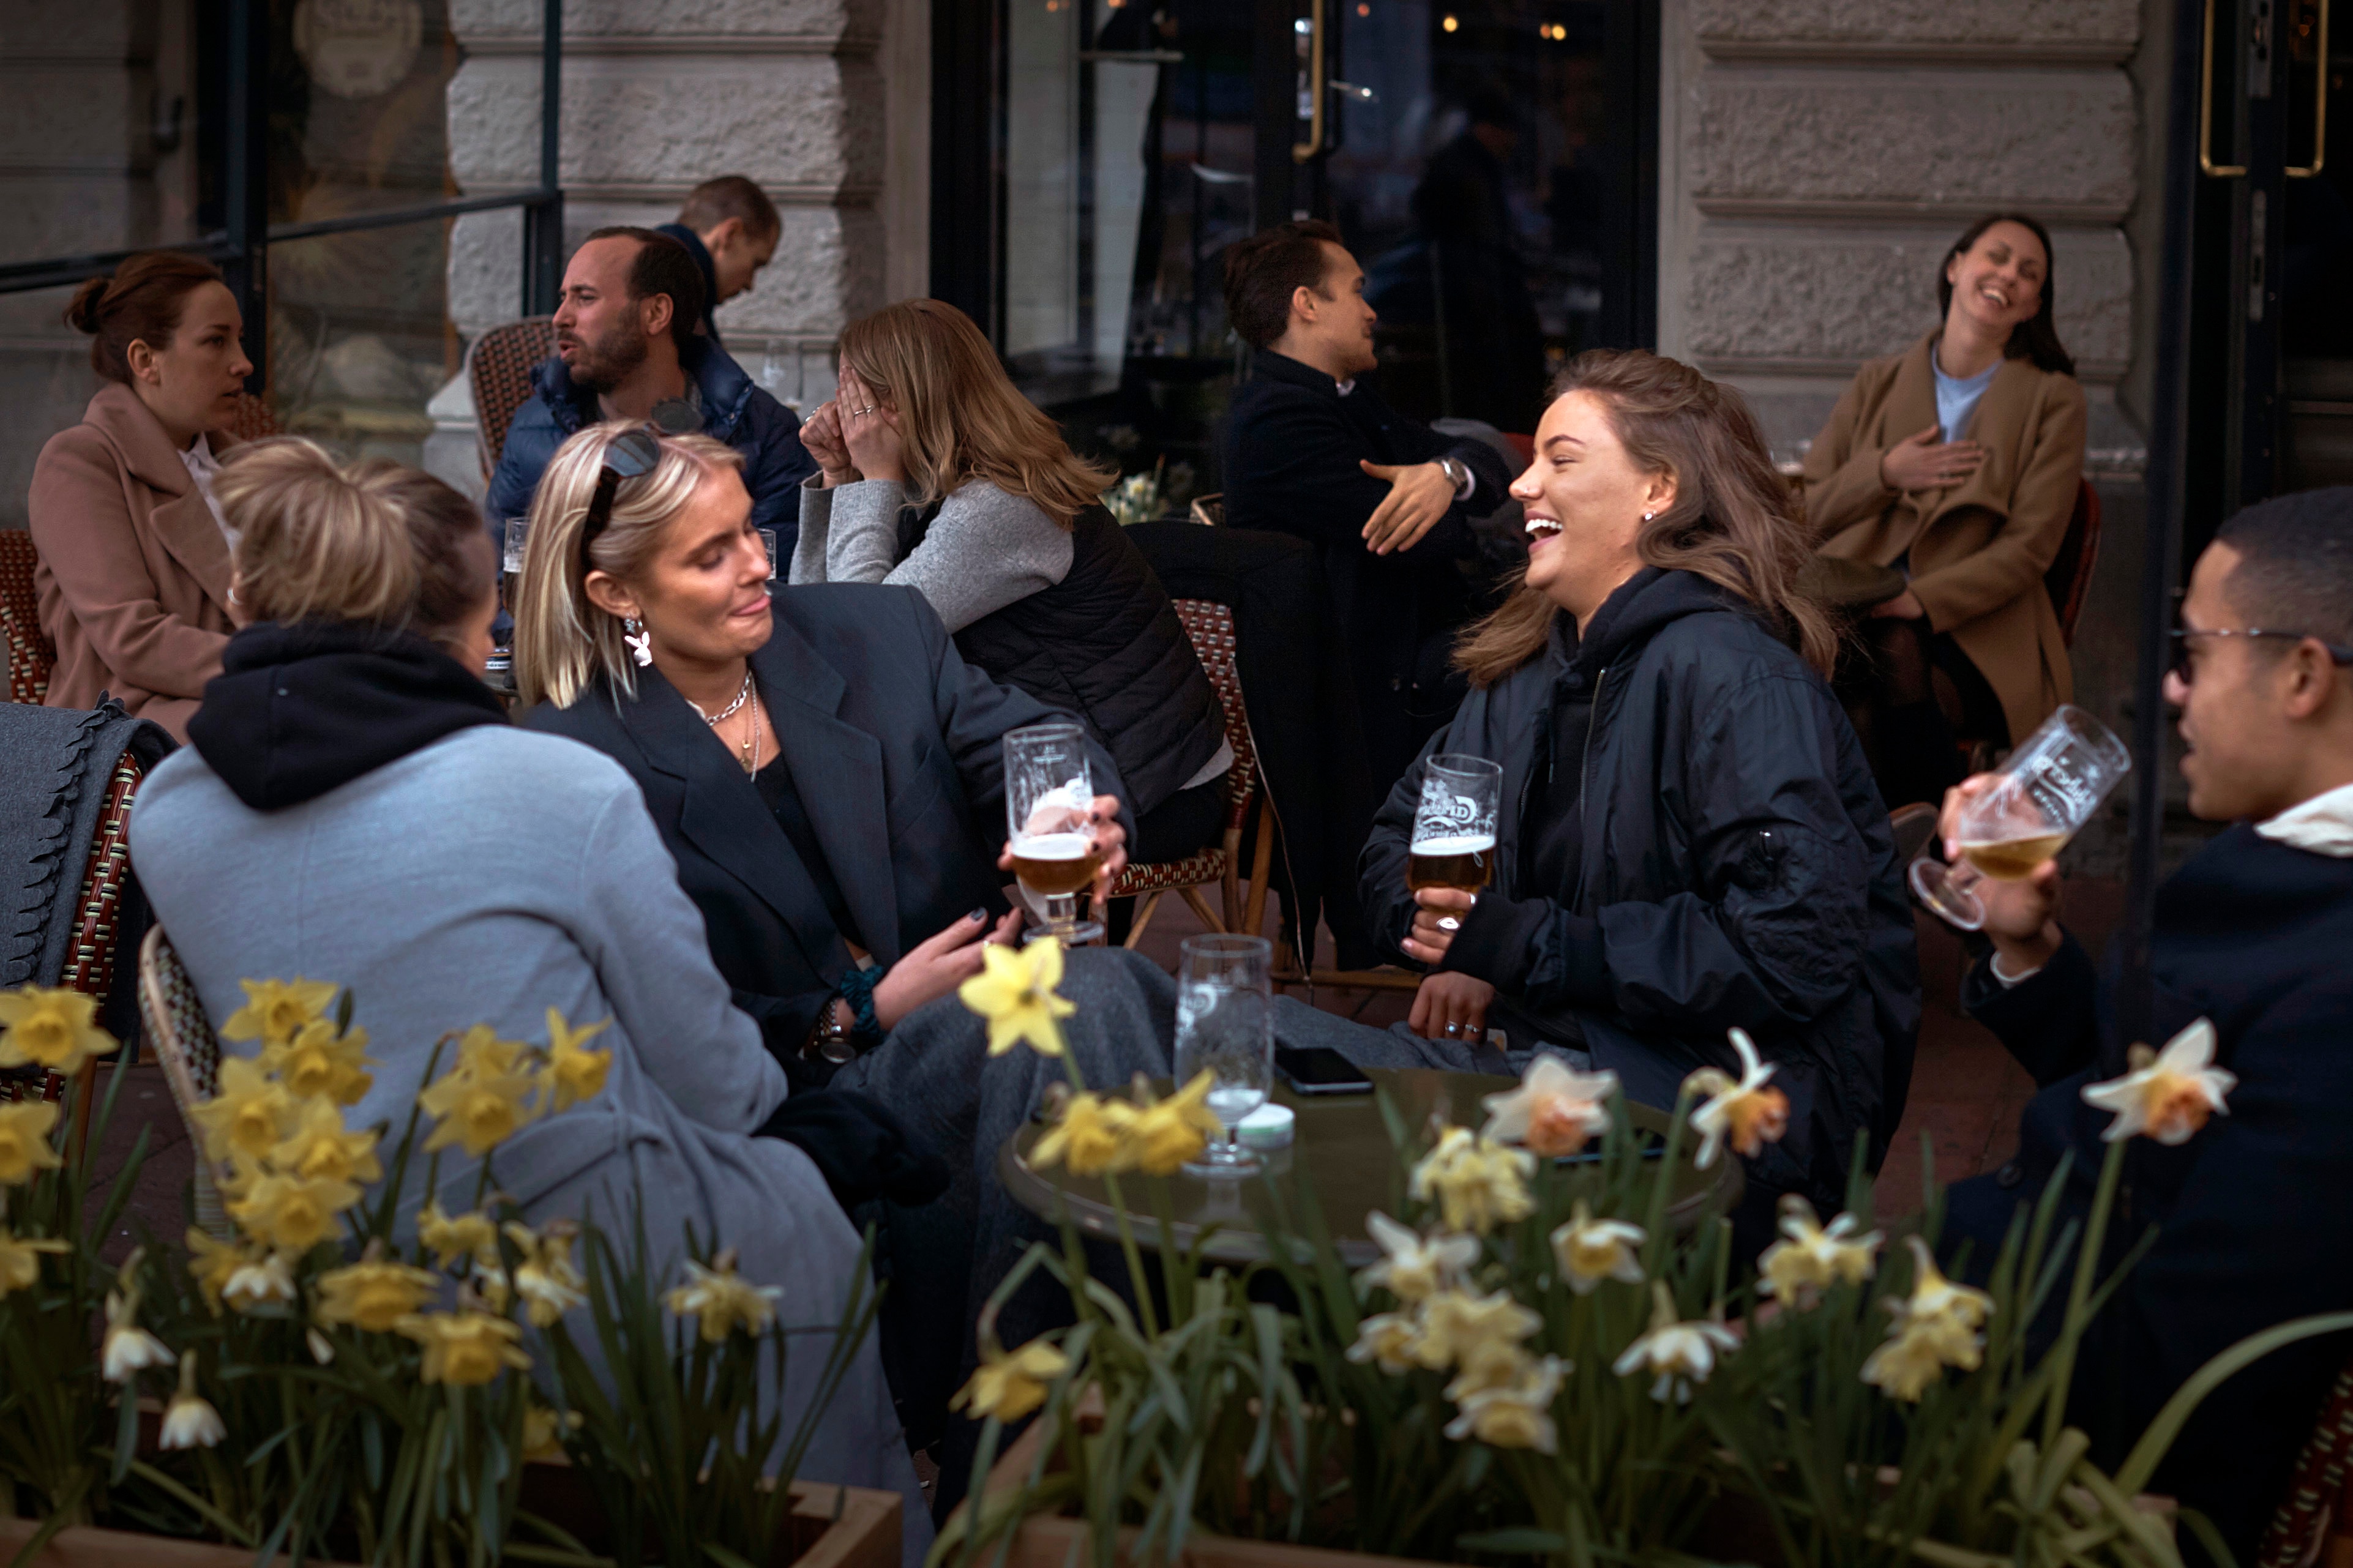 يتحدث الناس ويشربون خارج حانة في ستوكهولم بالسويد وسط جائحة فيروس كورونا.